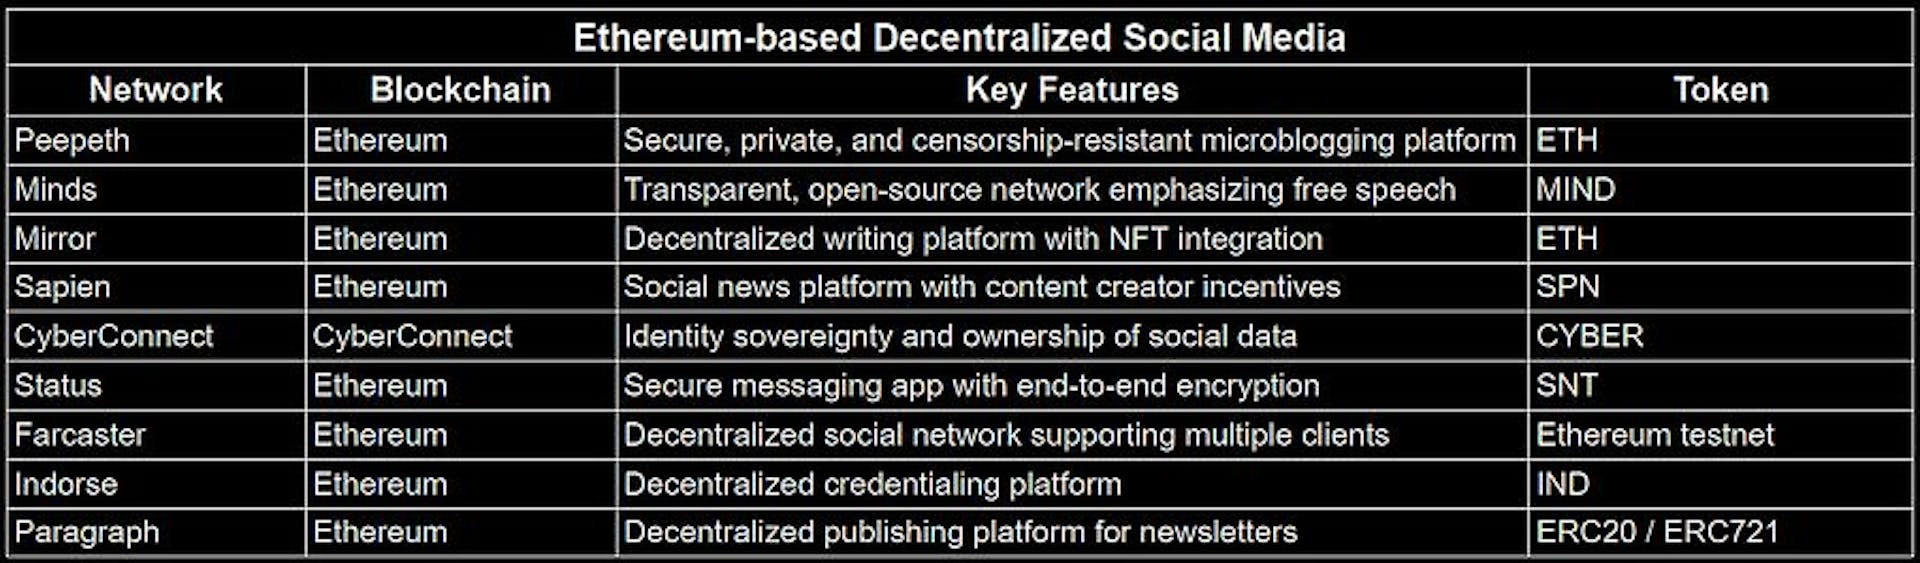 Ethereum-based Decentralized Social Media